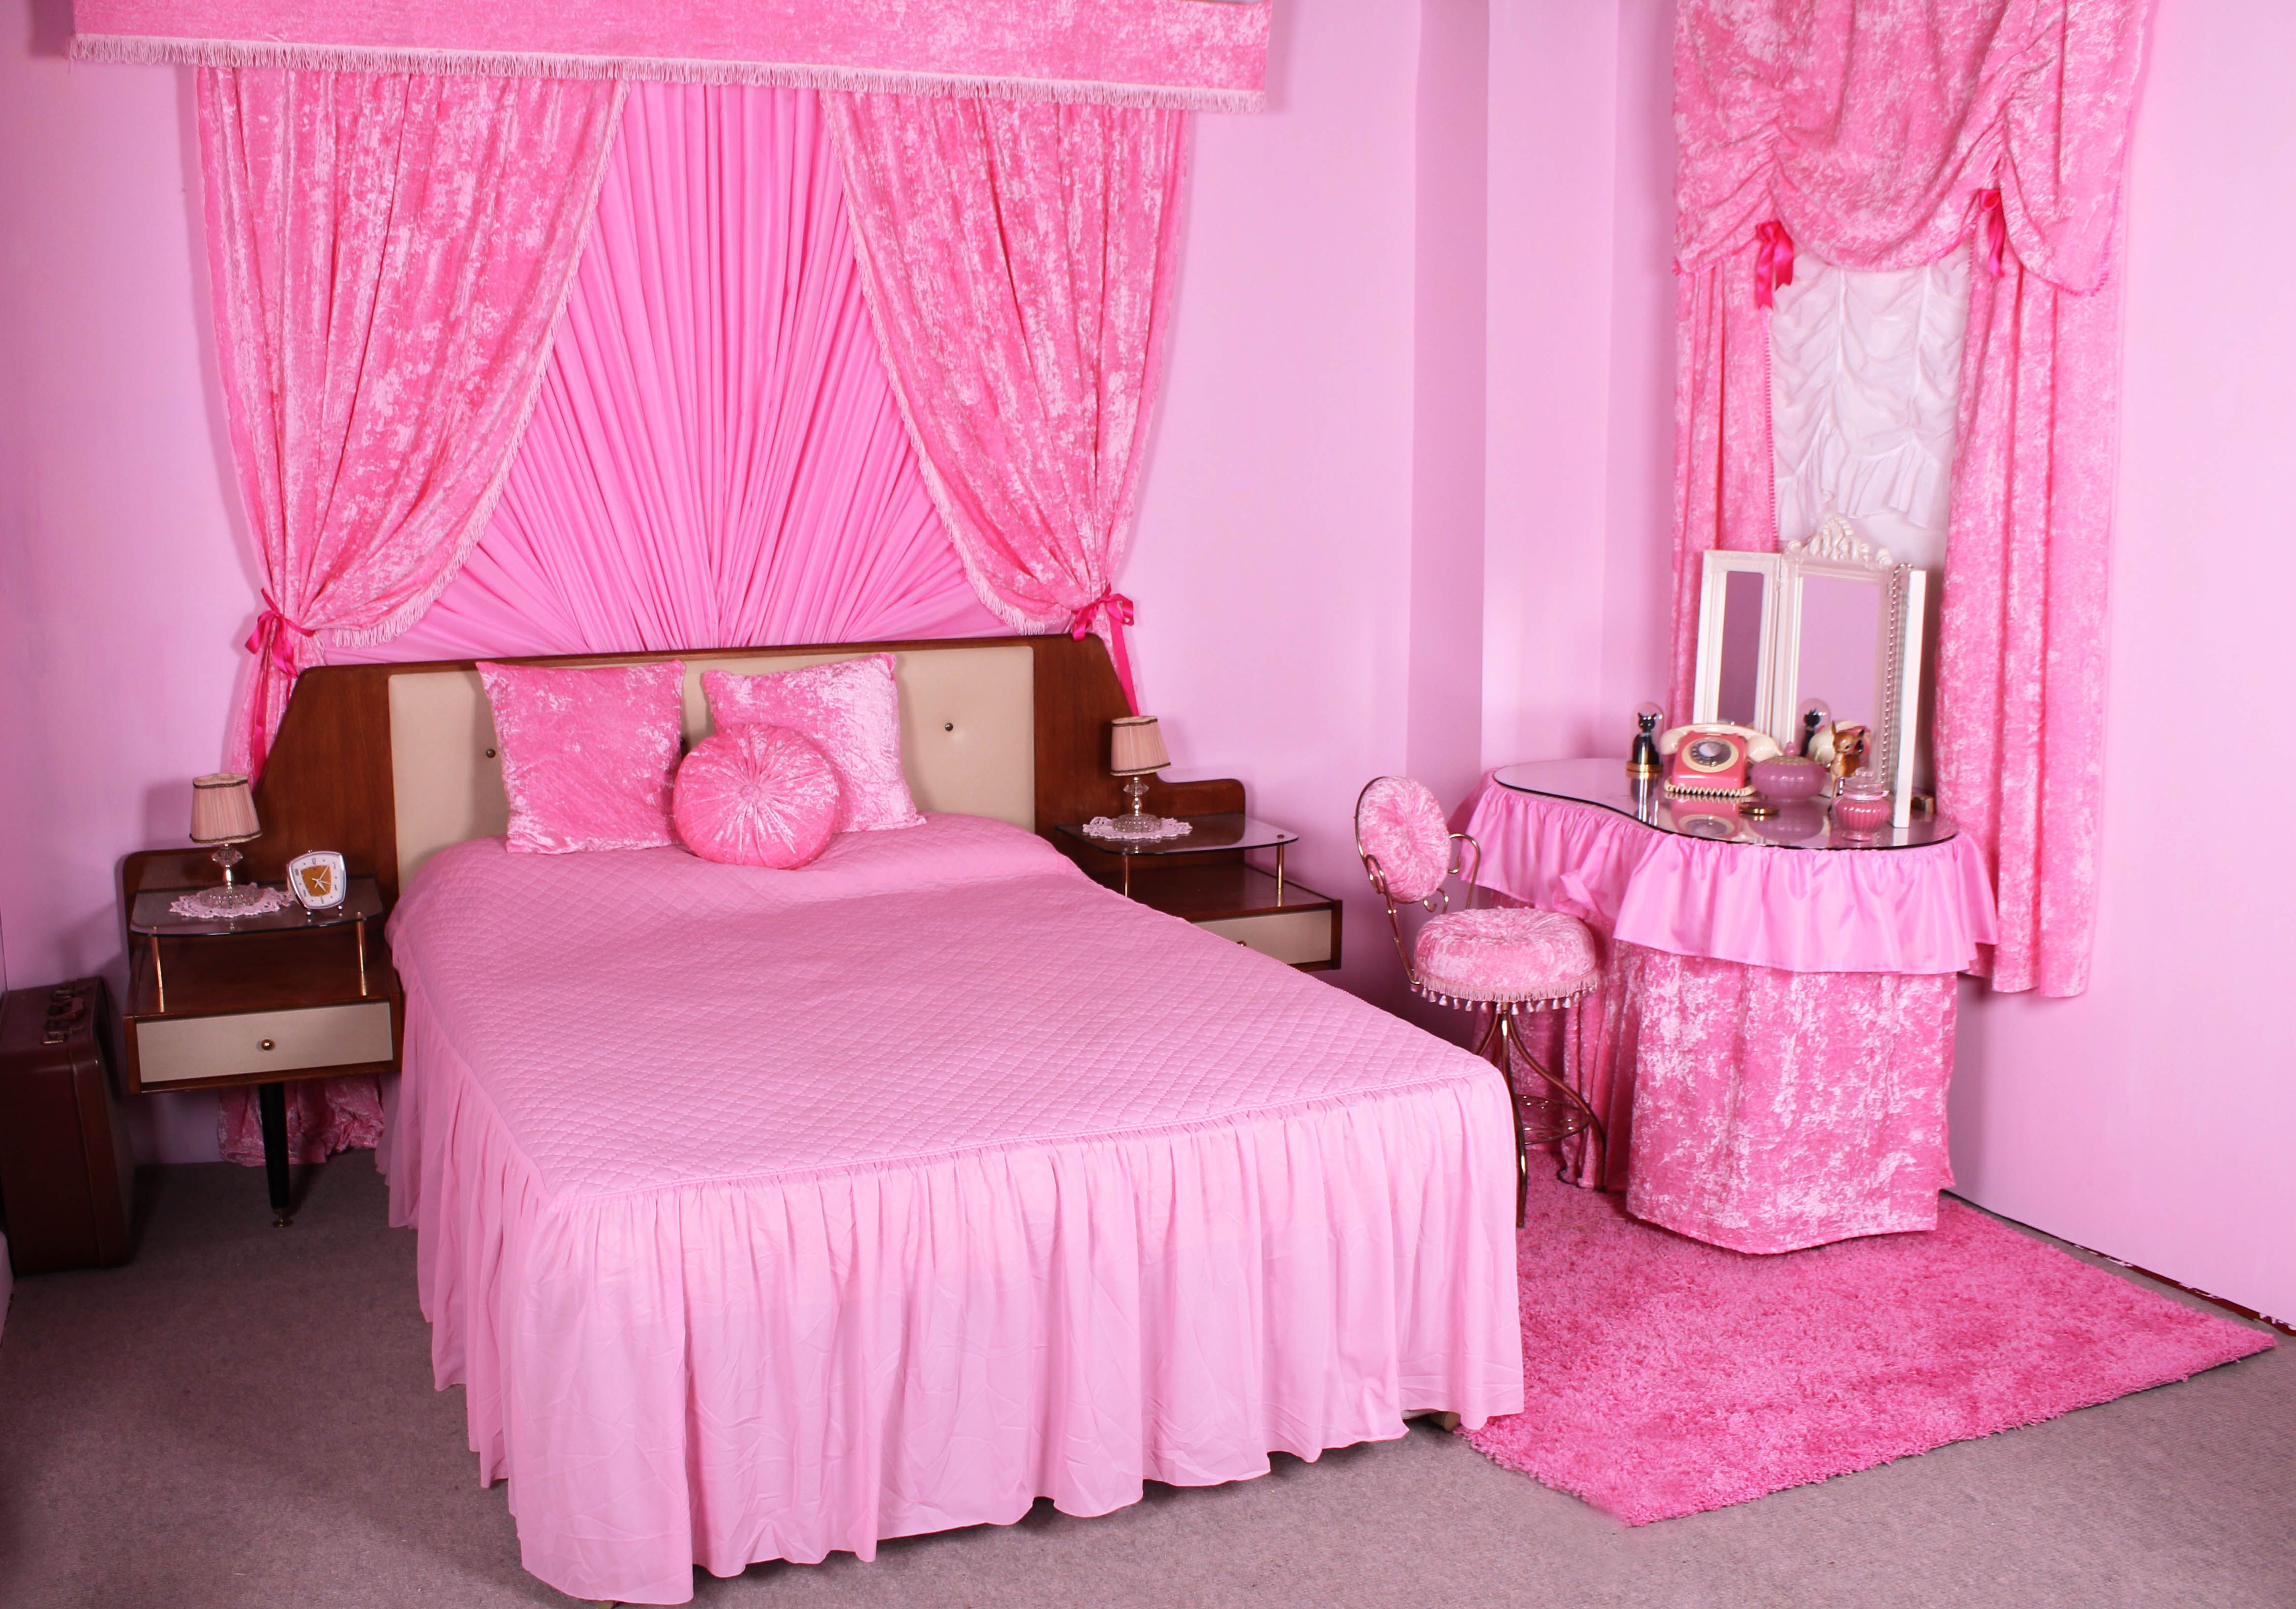 Beach Bedroom In Pink